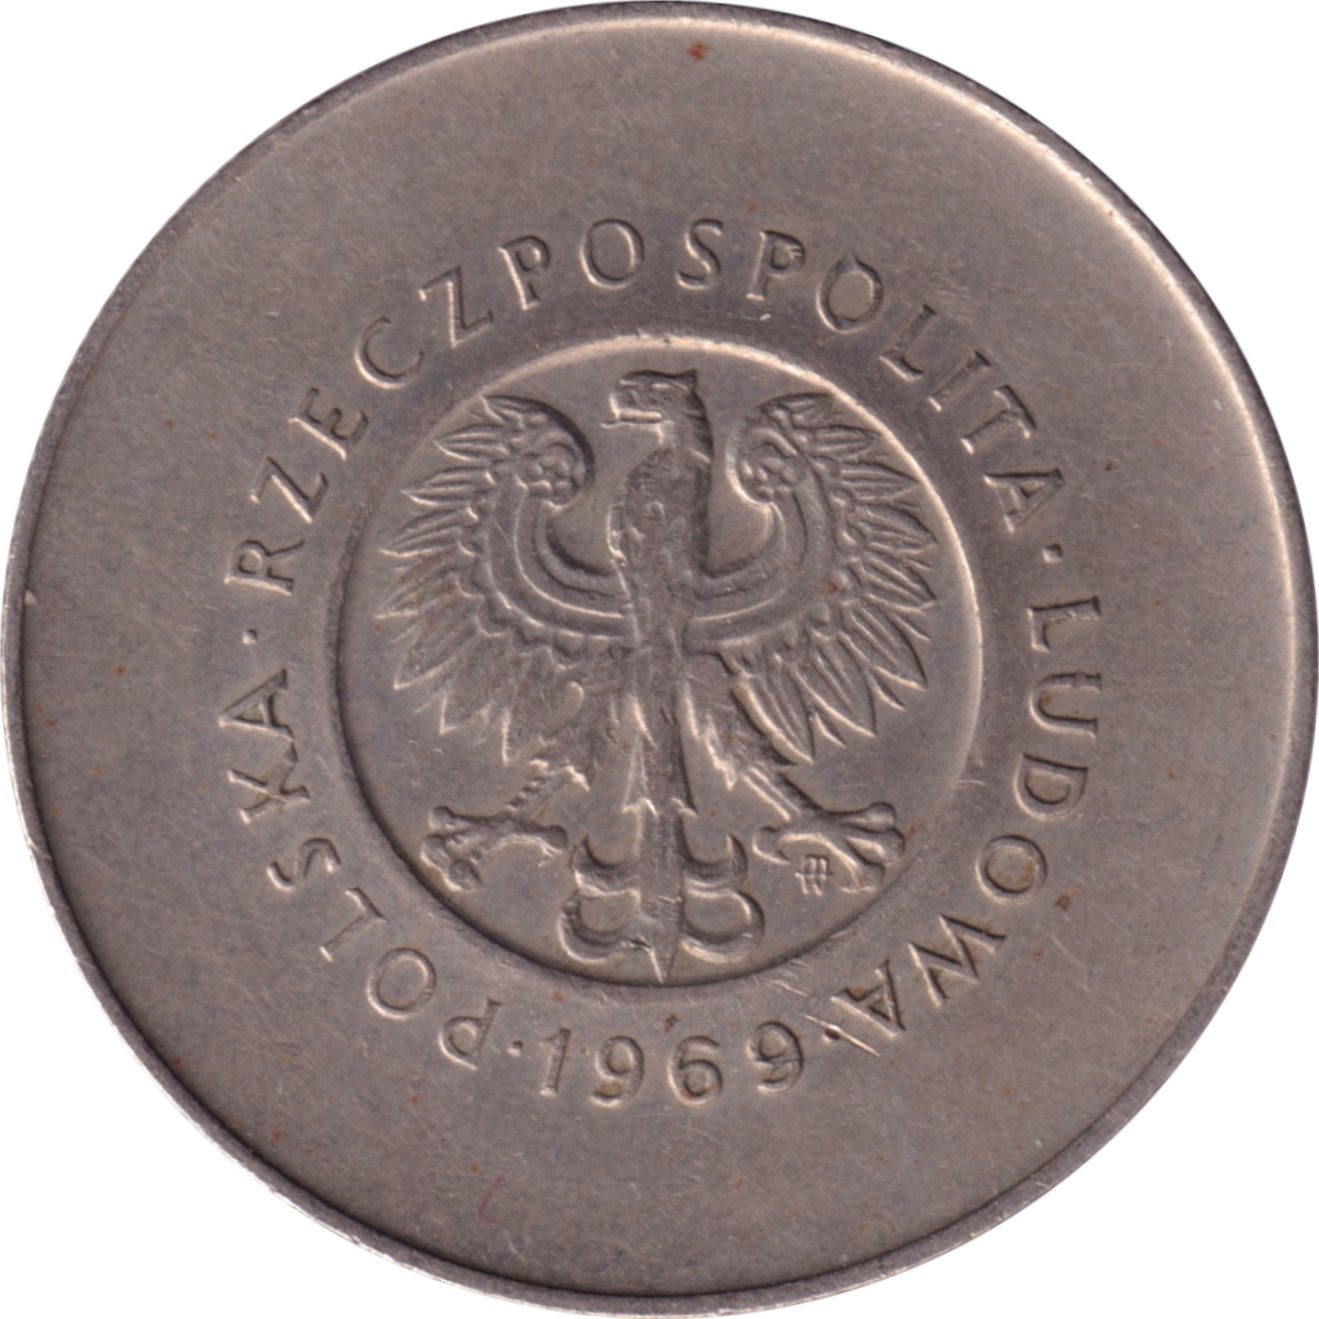 10 zlotych - République Populaire - 25 ans